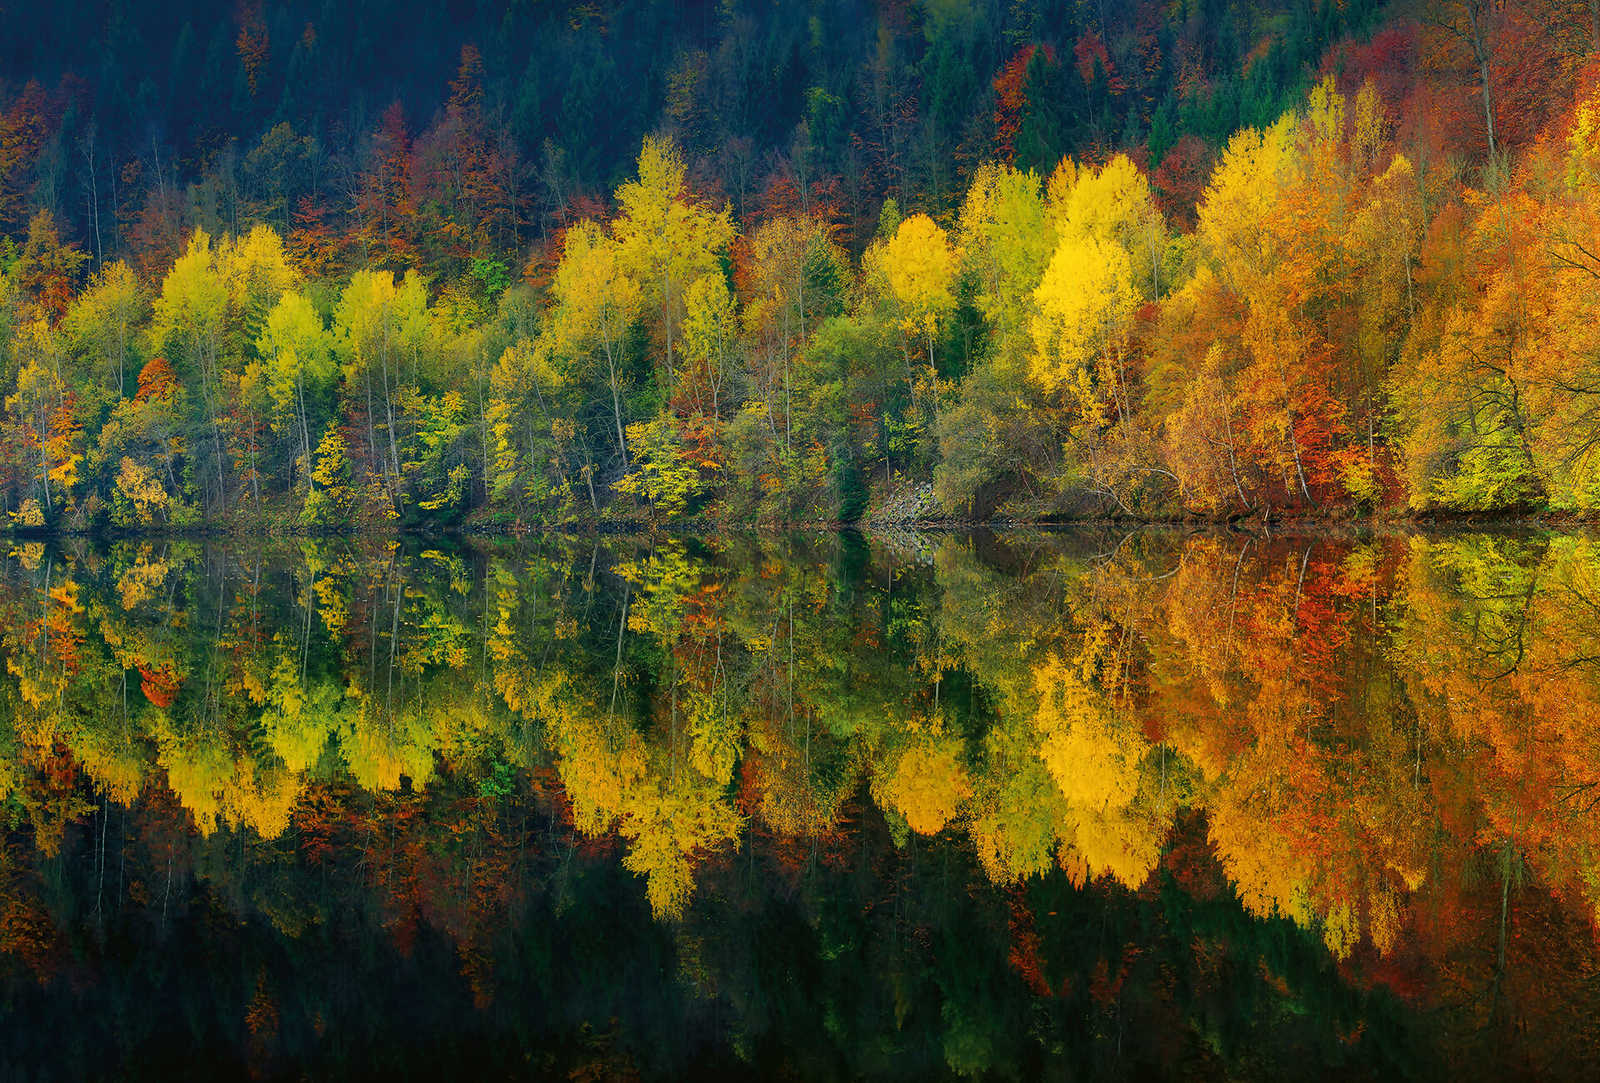 Fotomurali Foresta sul lago in autunno - Giallo, arancione, verde
